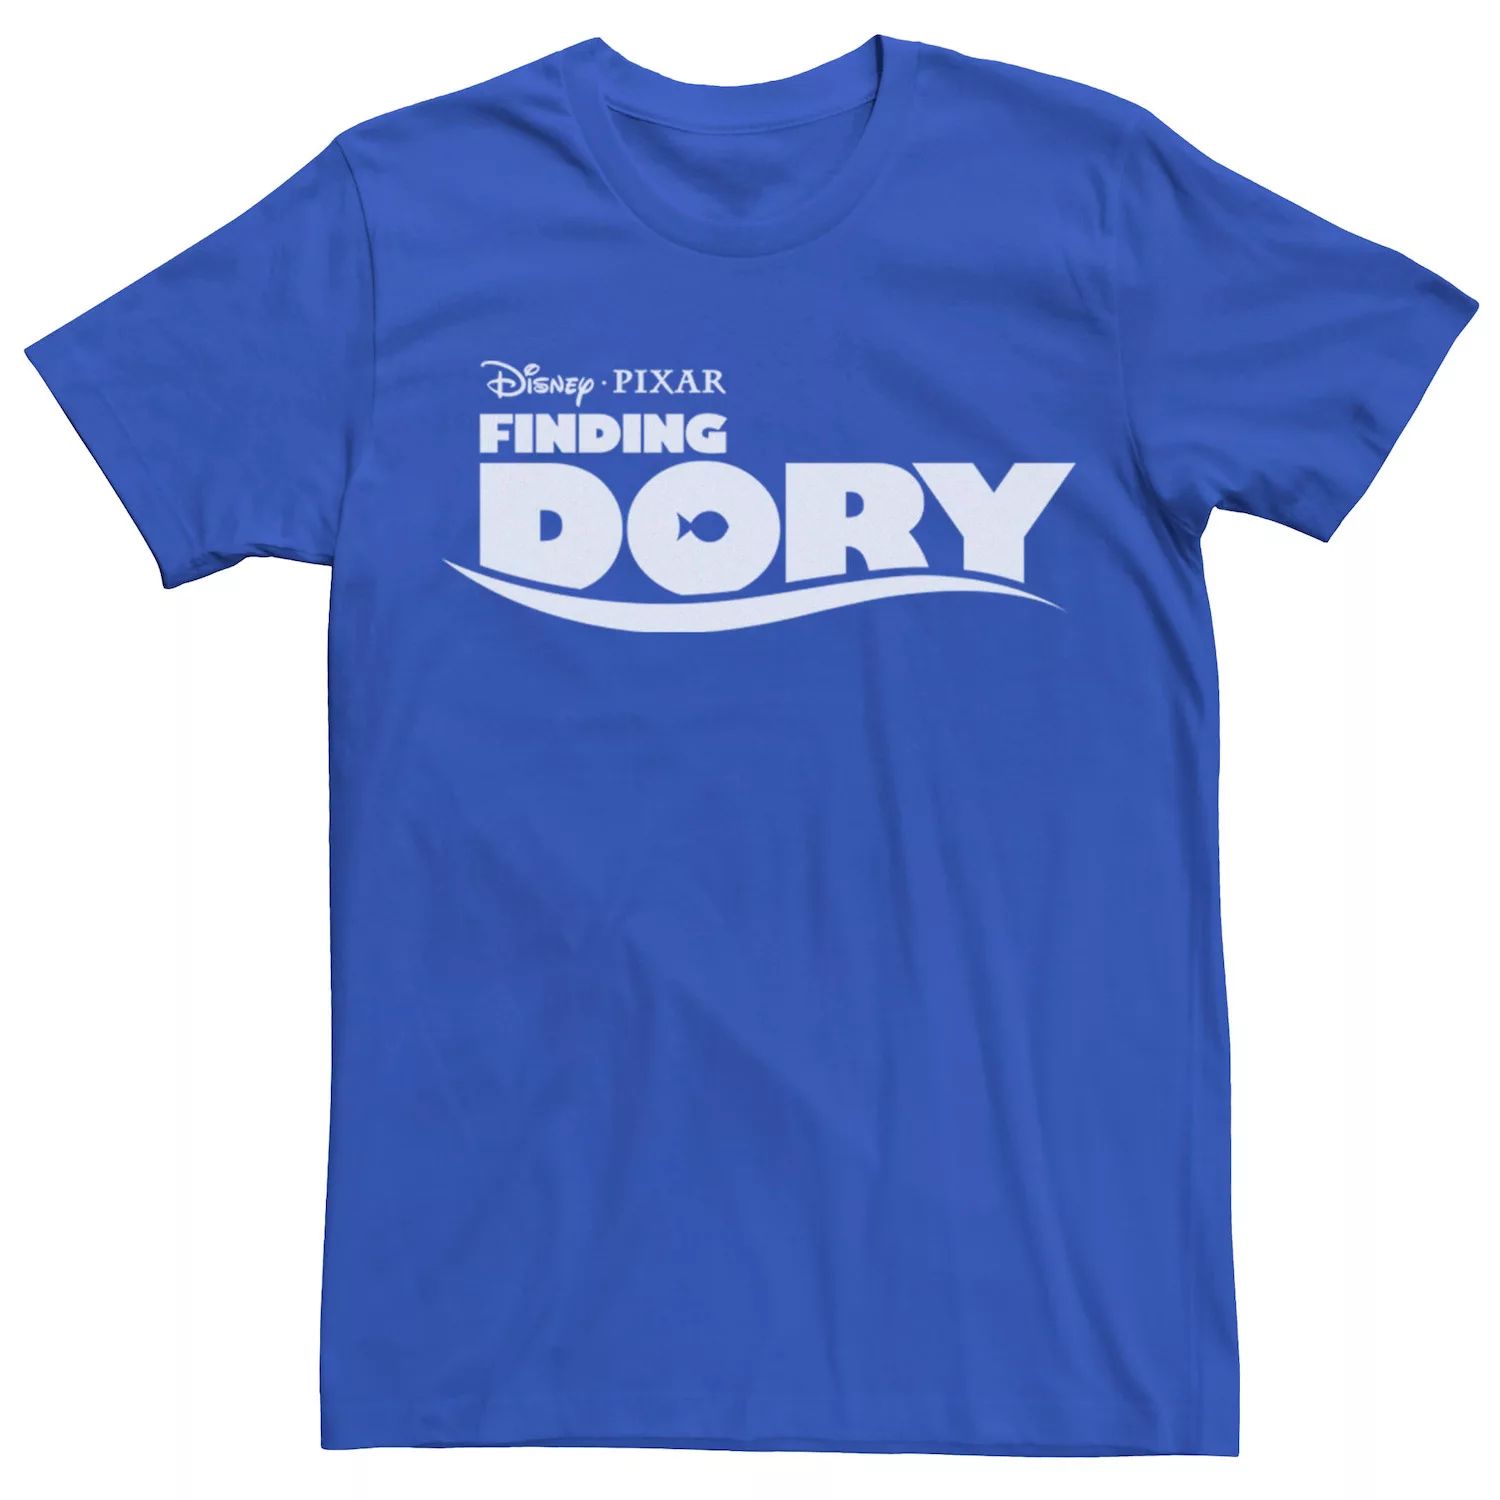 Мужская футболка с логотипом фильма «В поисках Дори» Disney / Pixar мужская футболка с логотипом фильма хороший динозавр disney pixar